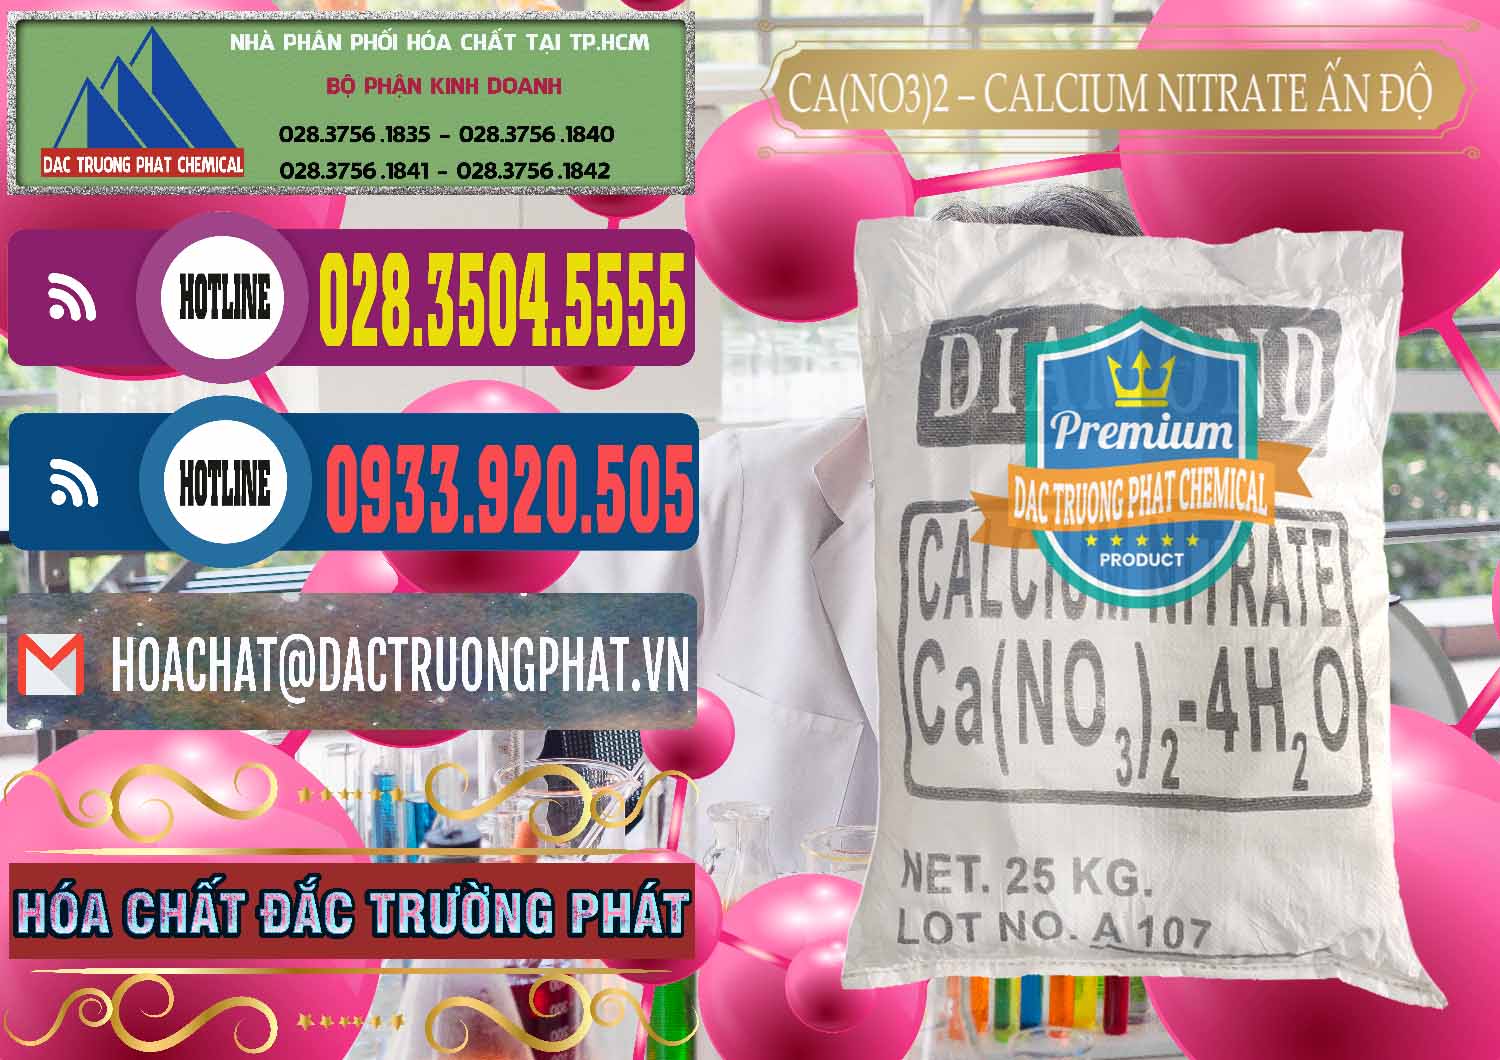 Nơi cung cấp và bán CA(NO3)2 – Calcium Nitrate Ấn Độ India - 0038 - Công ty nhập khẩu - cung cấp hóa chất tại TP.HCM - muabanhoachat.com.vn